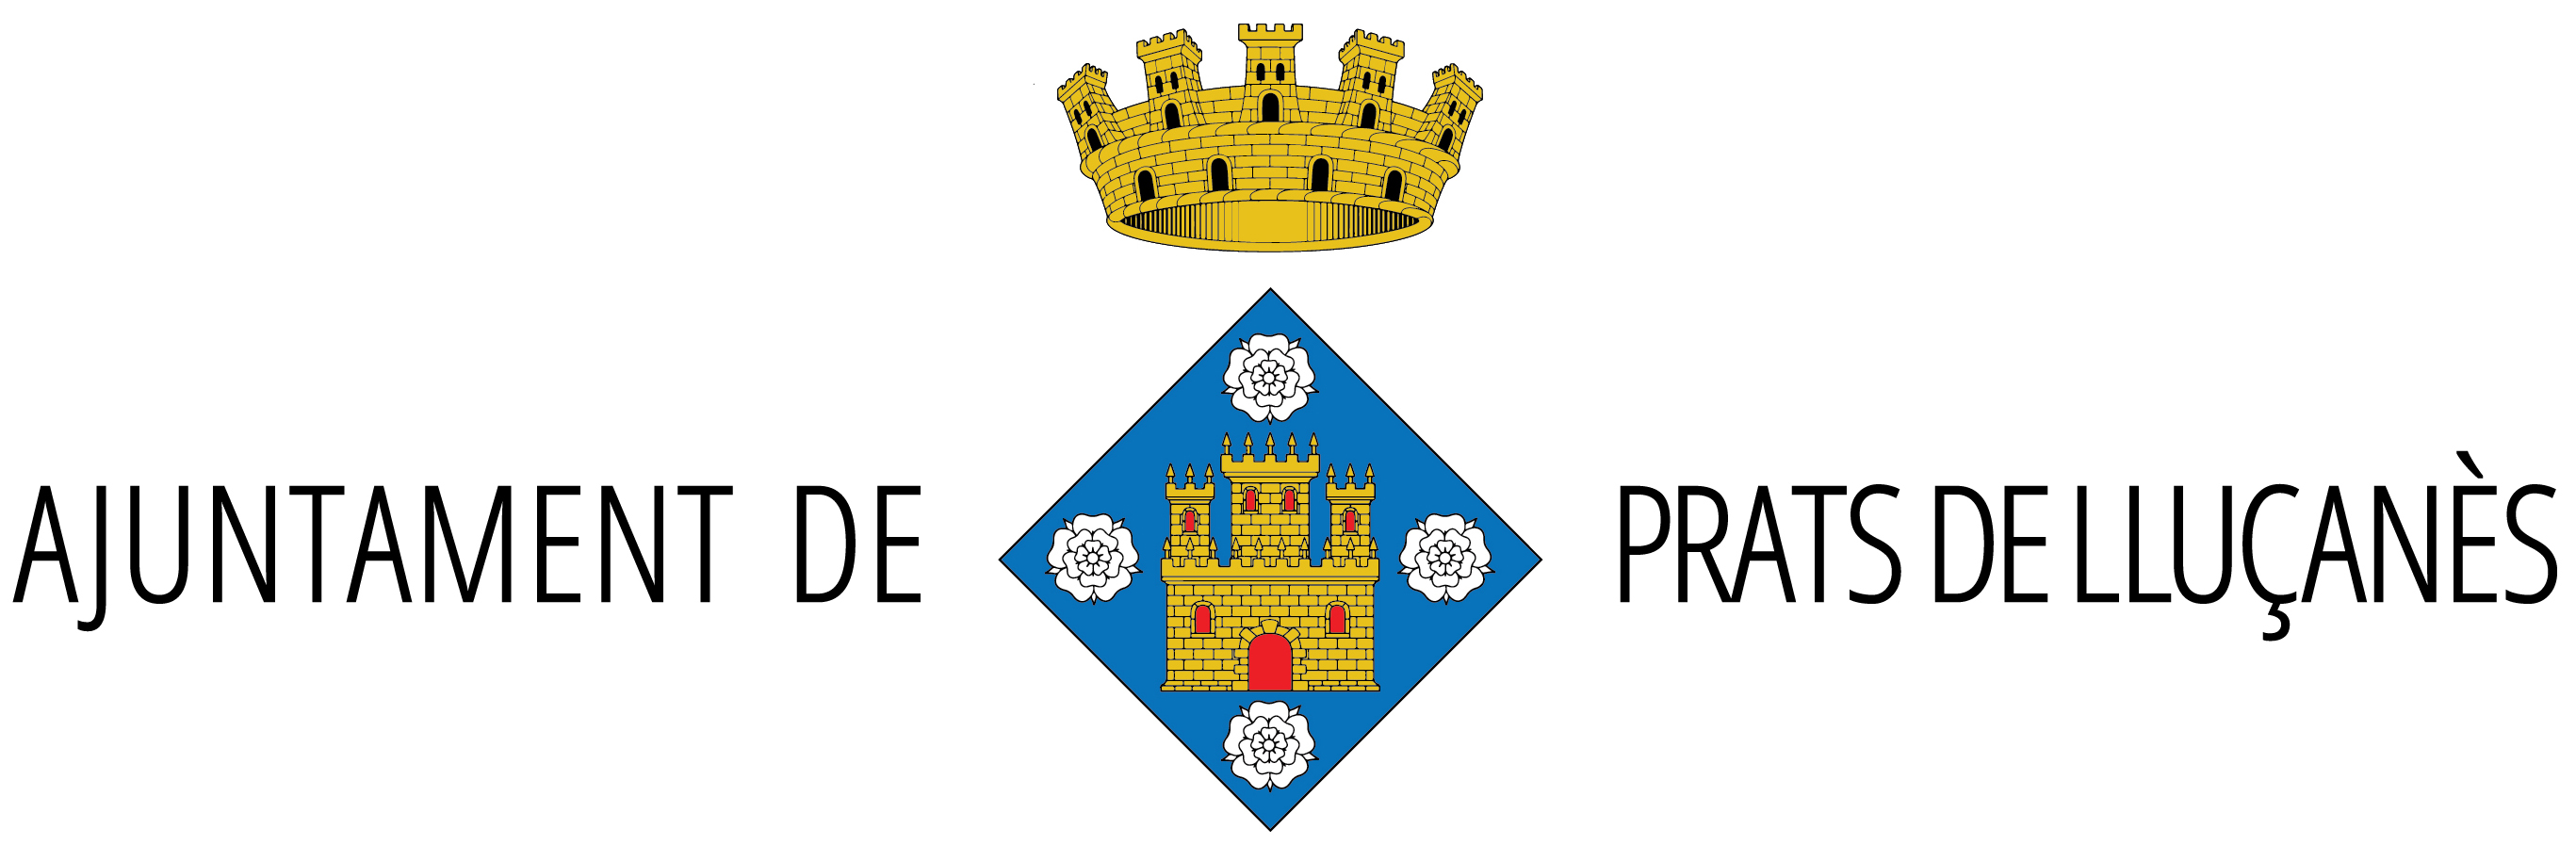 Ajuntament de Prats del Lluçanès